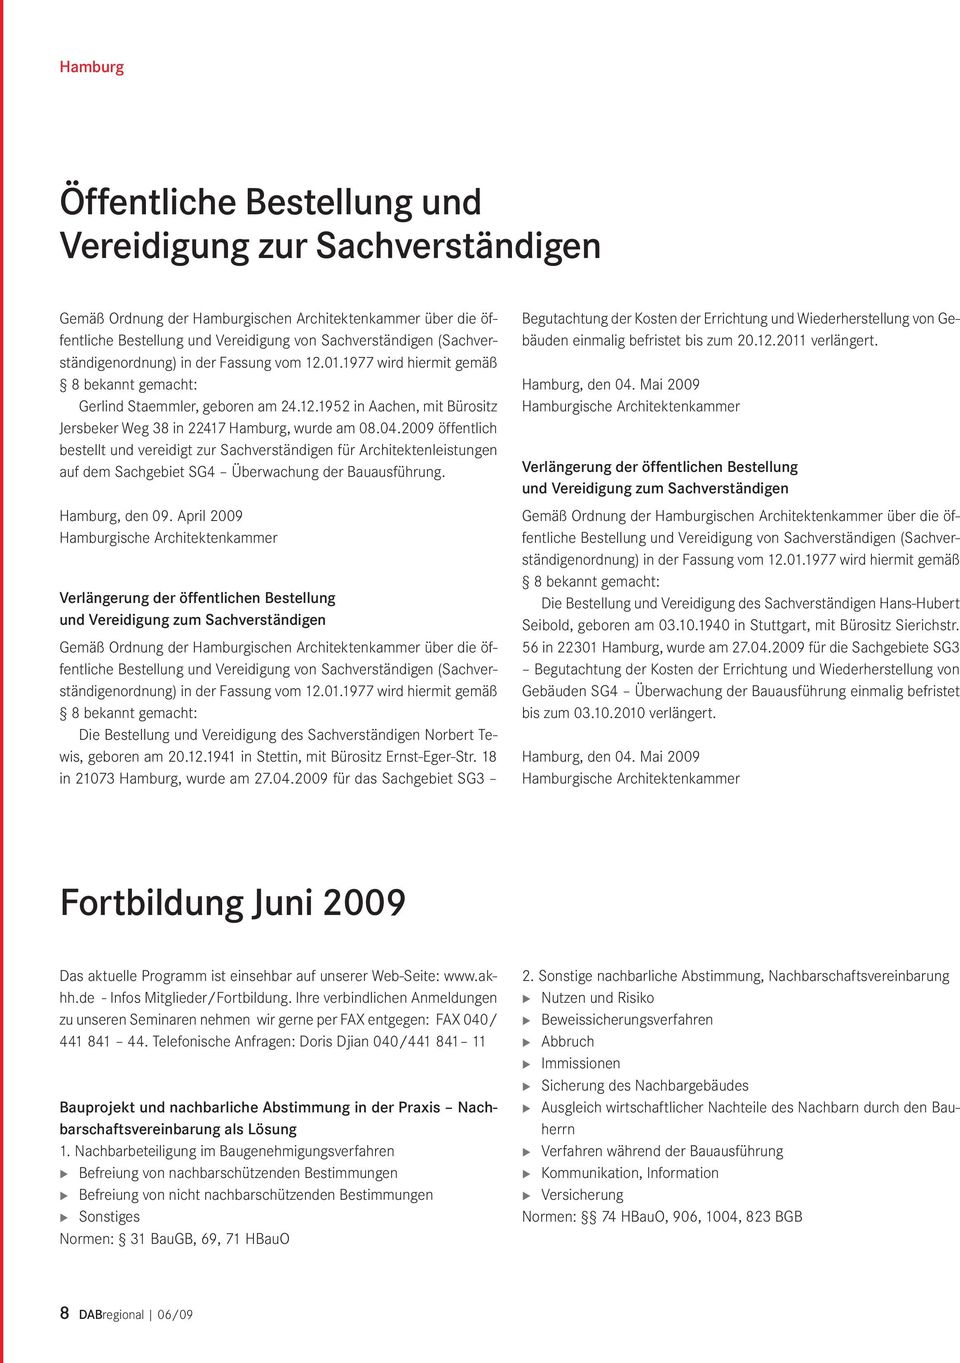 04.2009 öffentlich bestellt und vereidigt zur Sachverständigen für Architektenleistungen auf dem Sachgebiet SG4 Überwachung der Bauausführung. Hamburg, den 09.